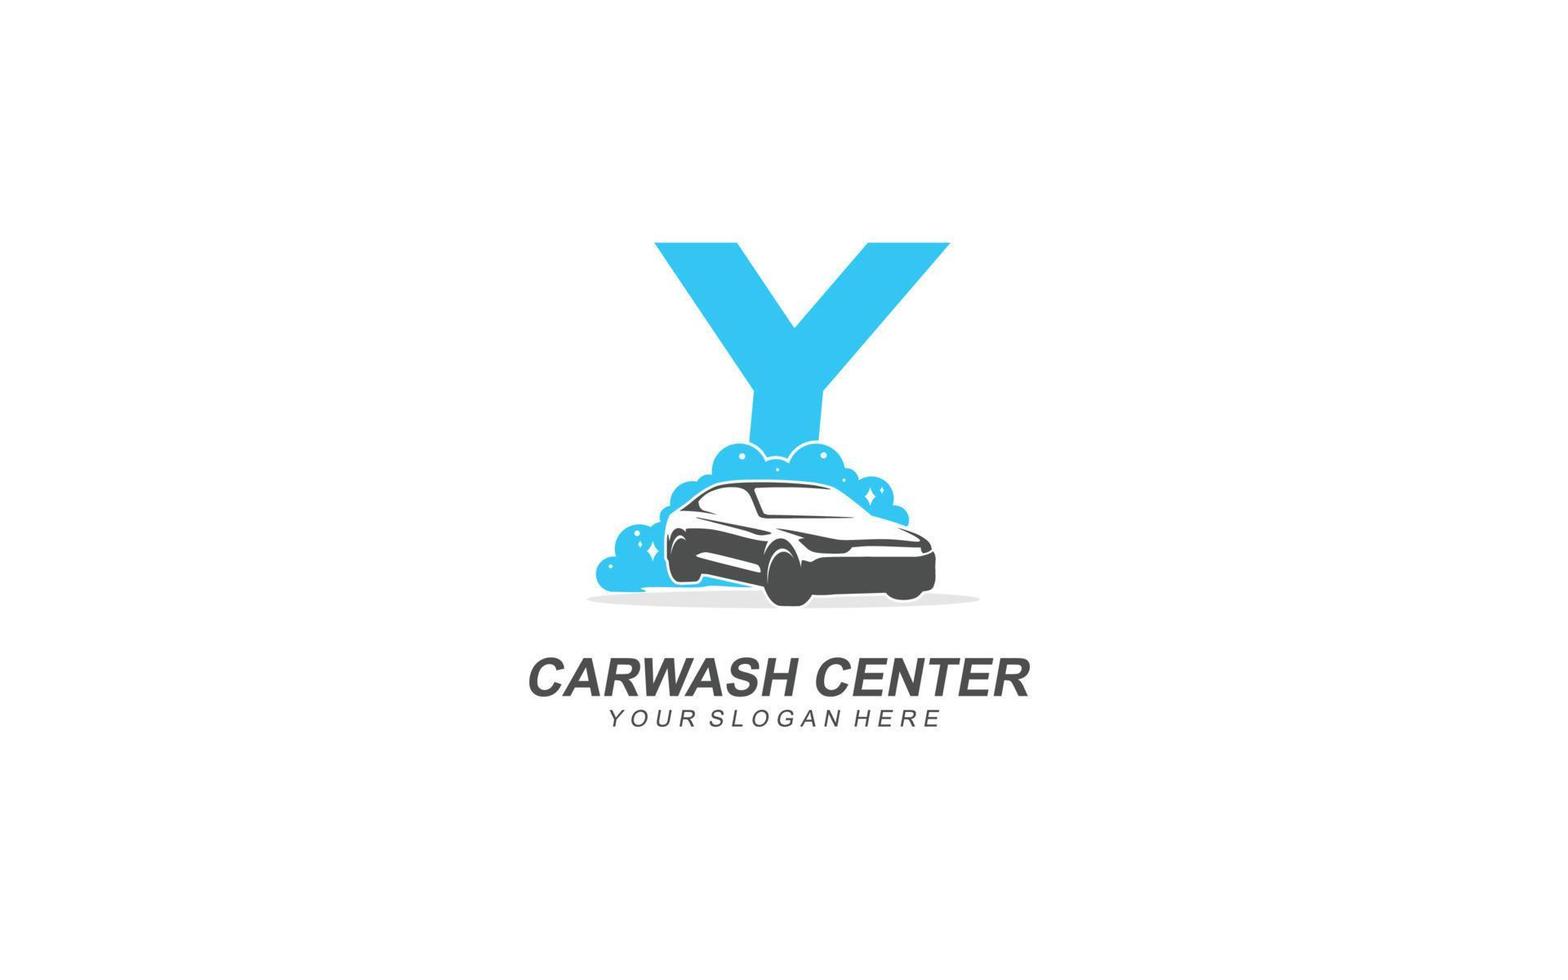 Y Car wash logo design inspiration. Vector letter template design for brand.